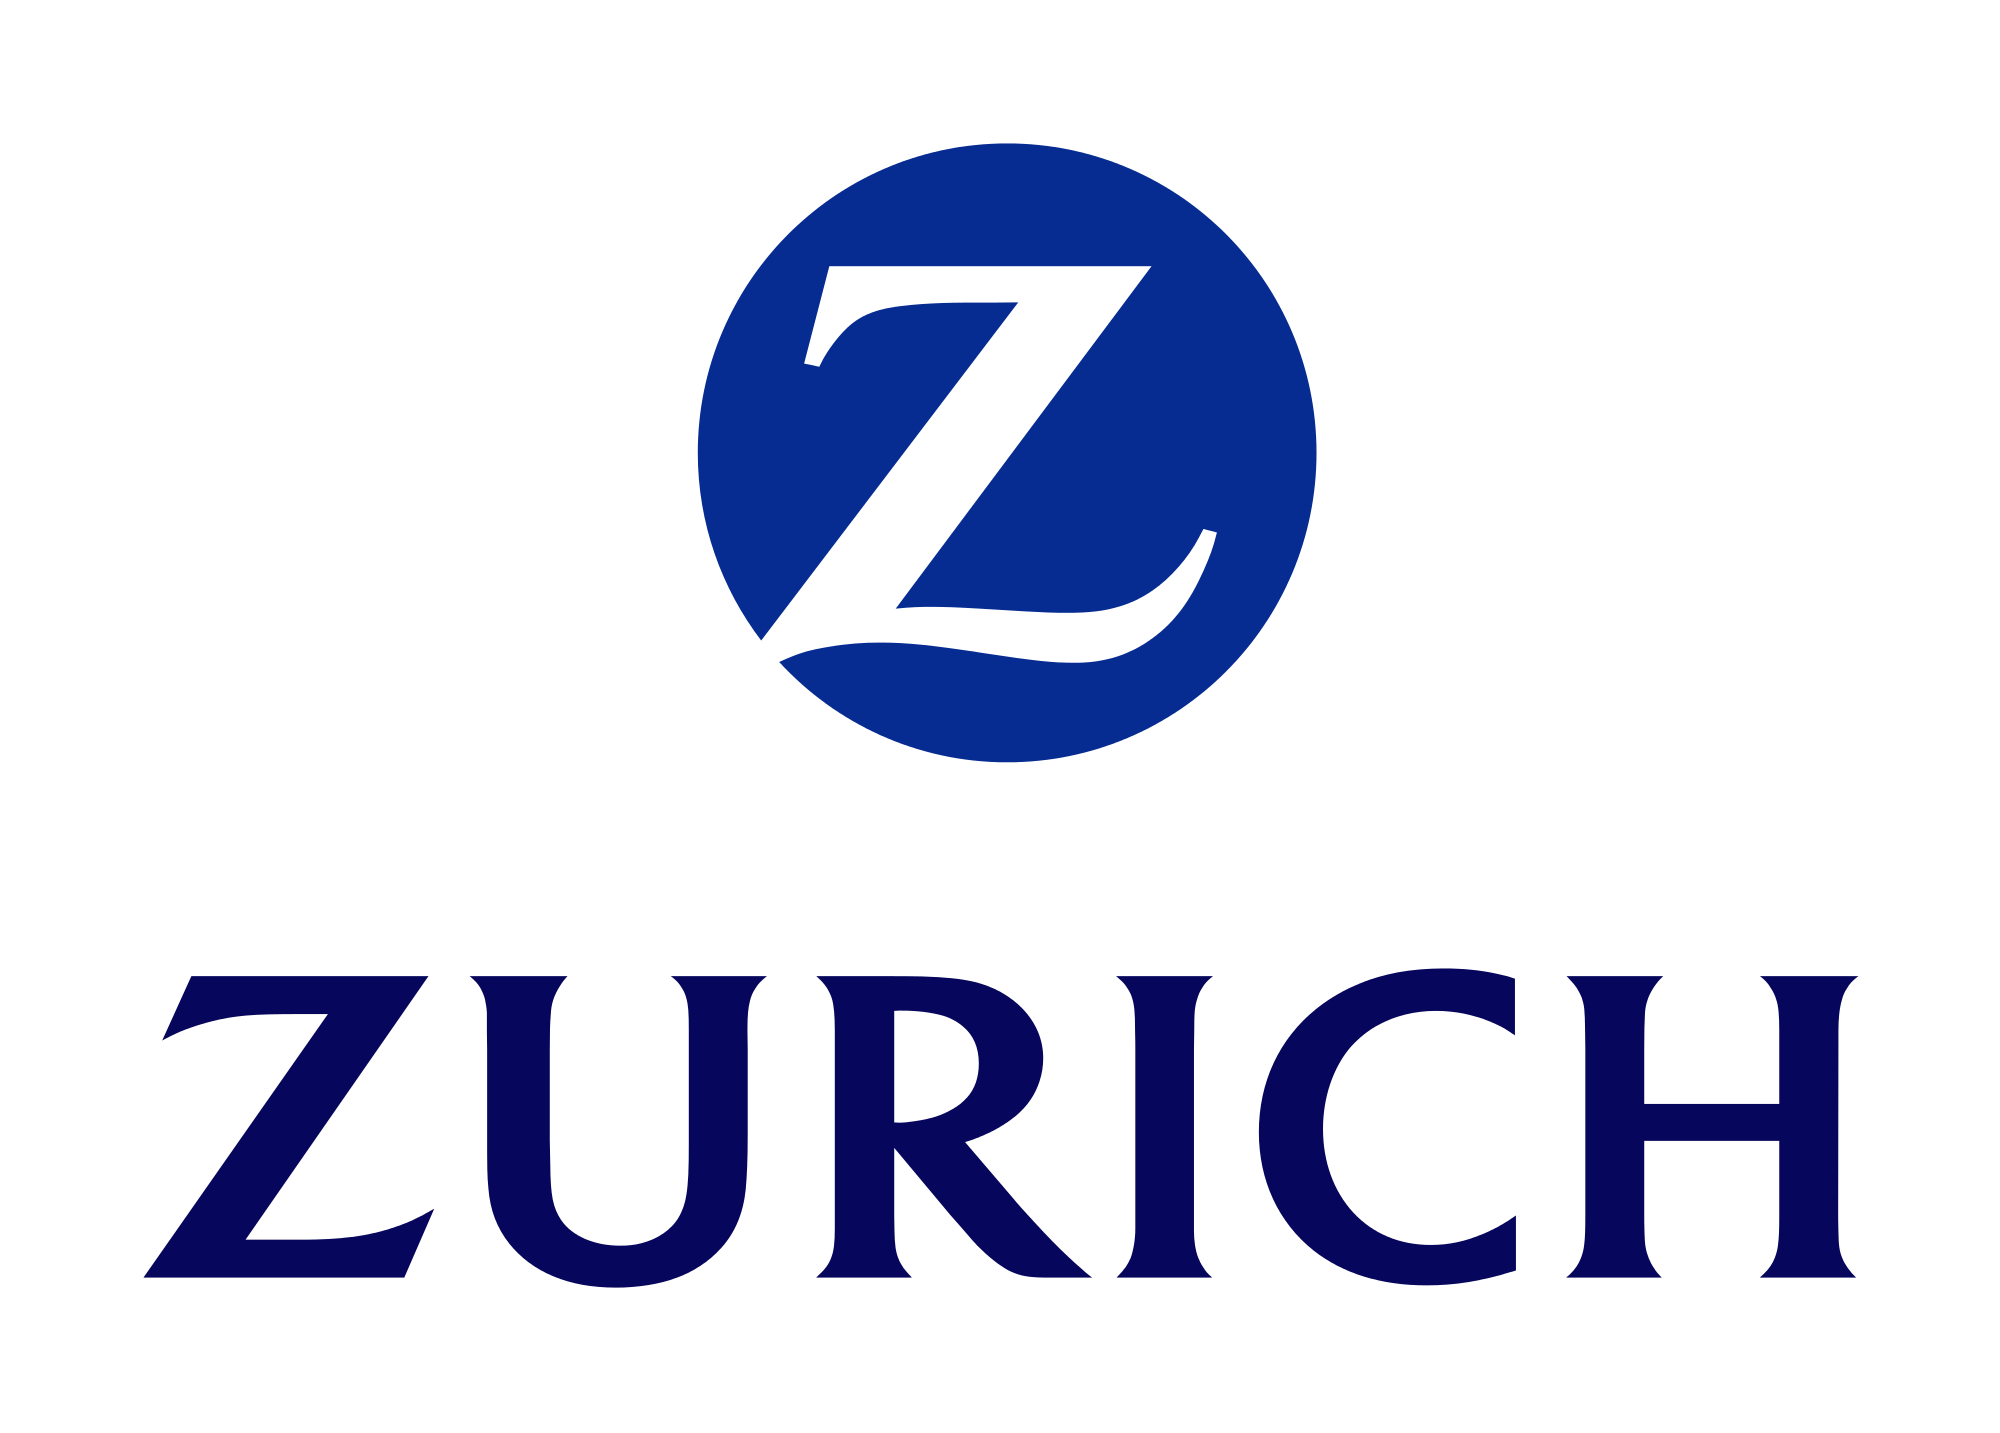 Zurich & Blue Zebra to end underwriting arrangement - Reinsurance News